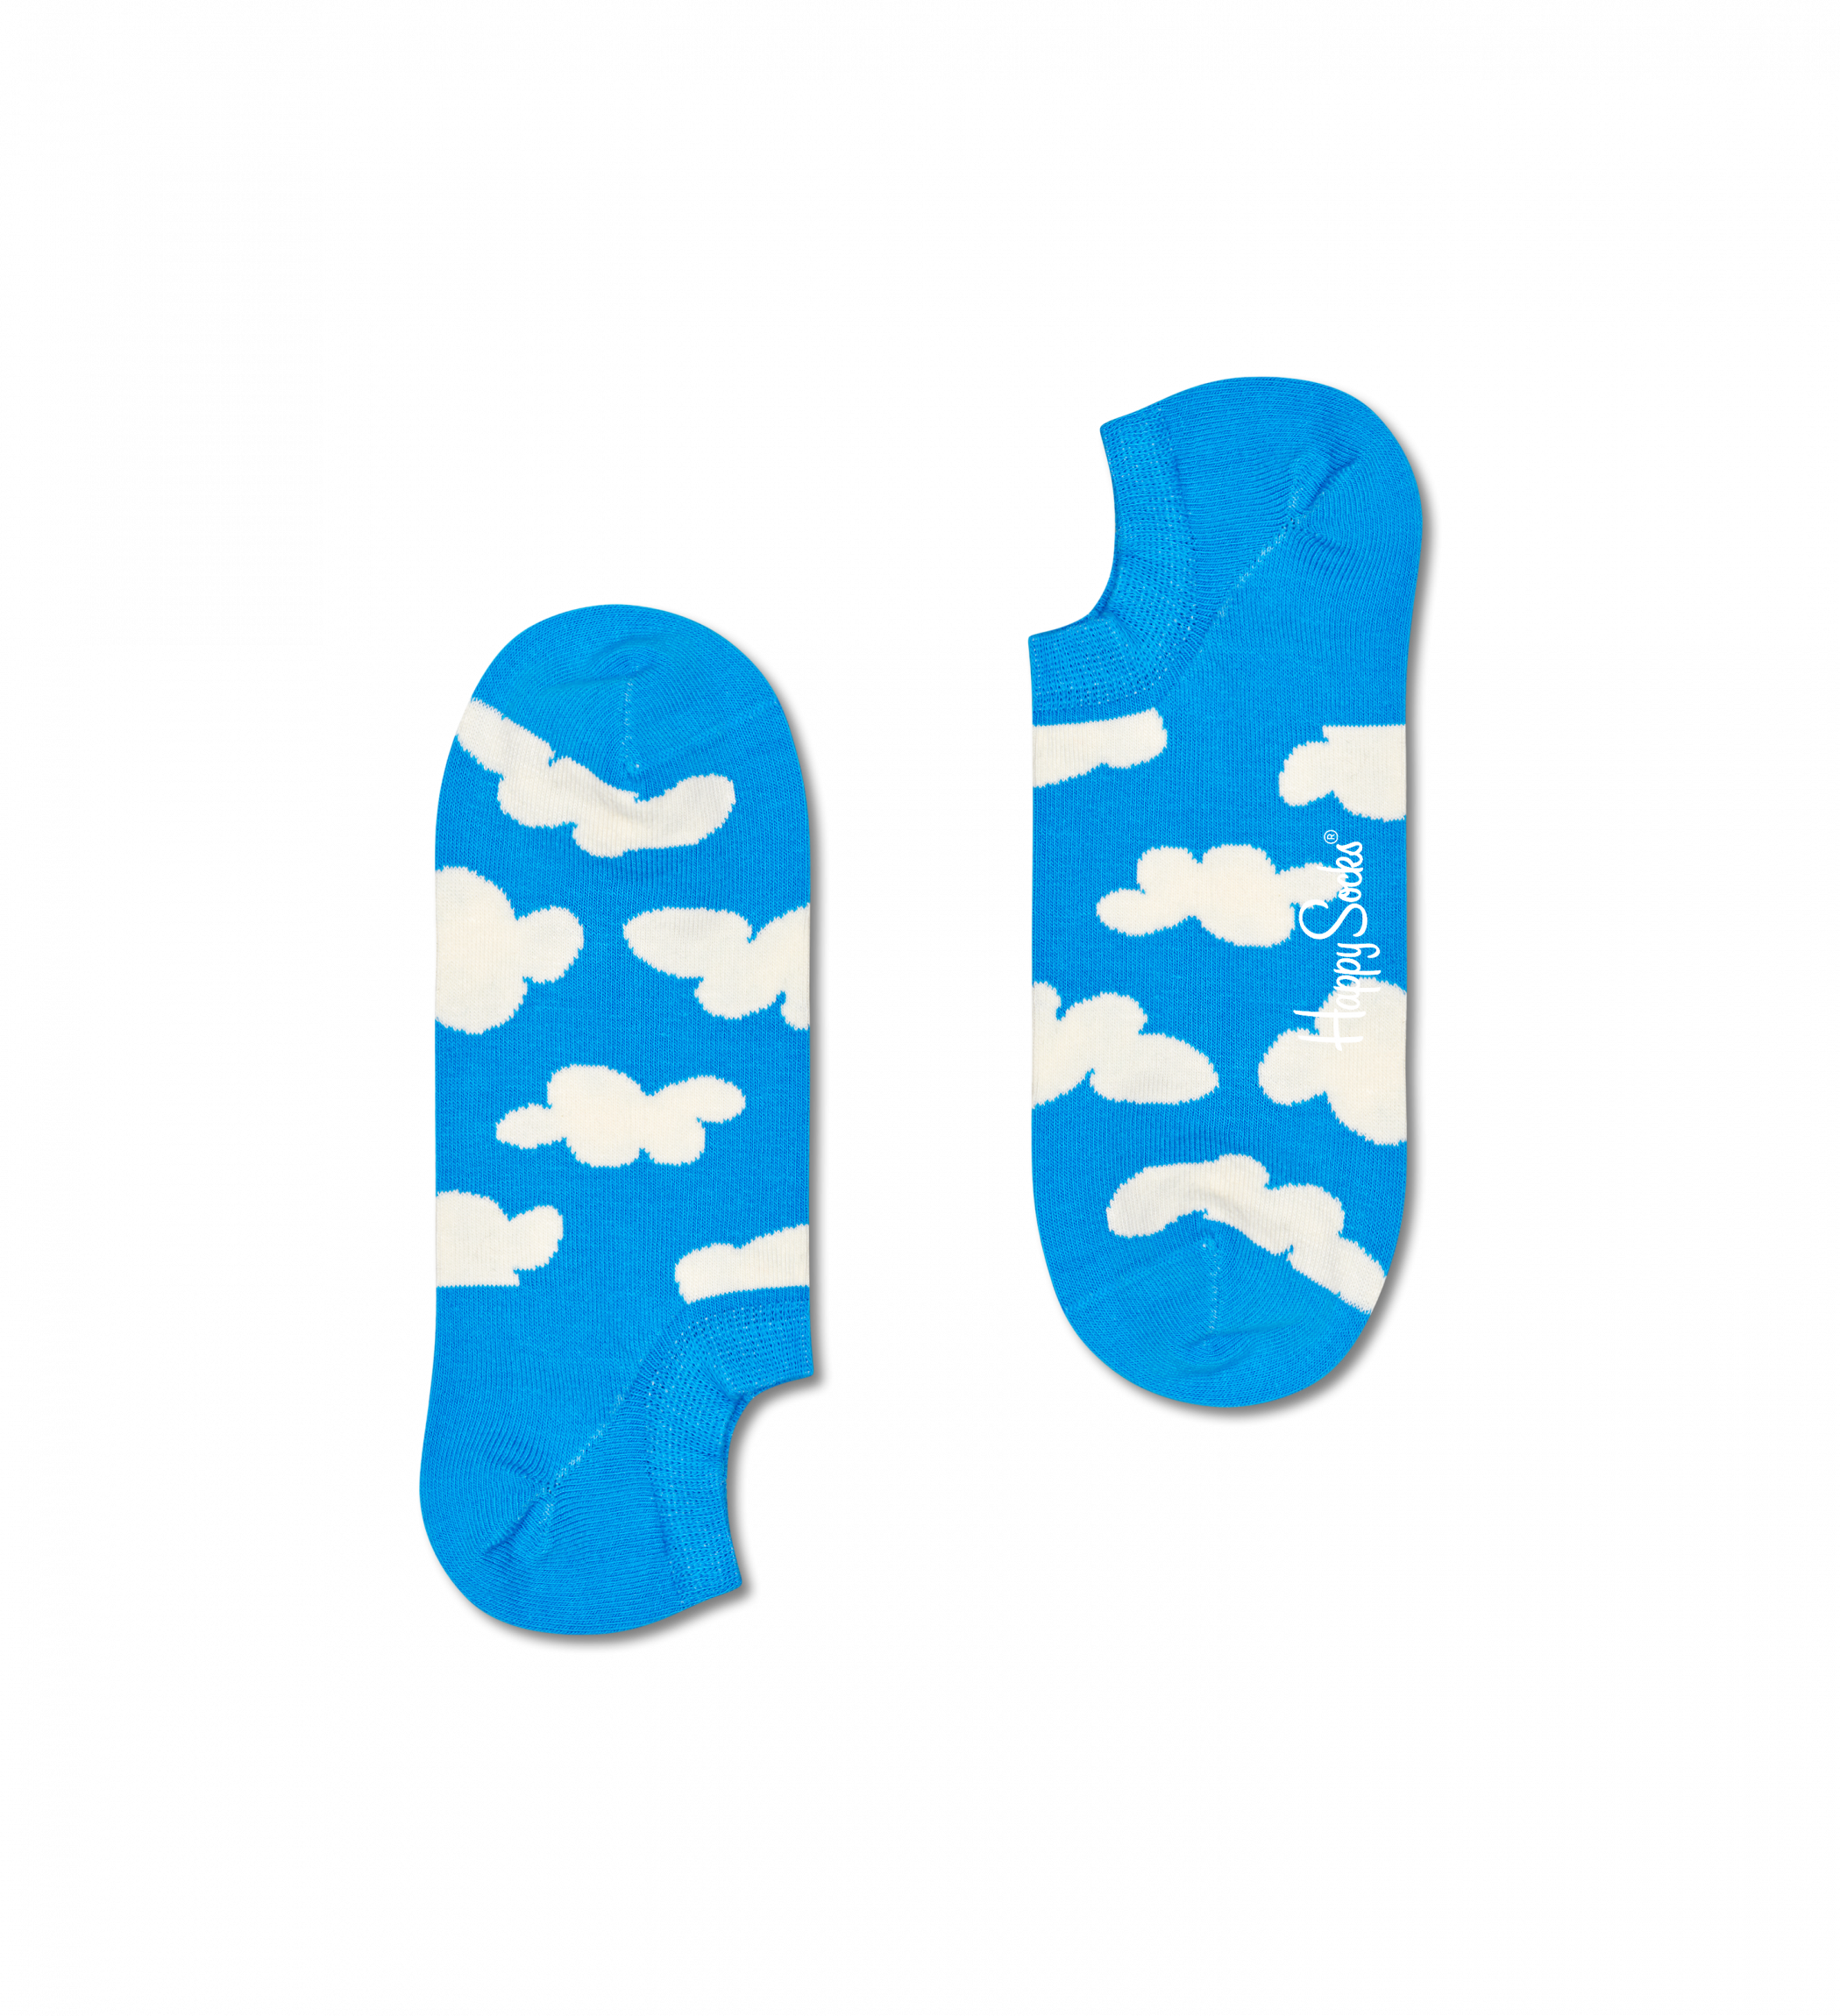 Modré nízké ponožky Happy Socks s mraky, vzor Cloudy